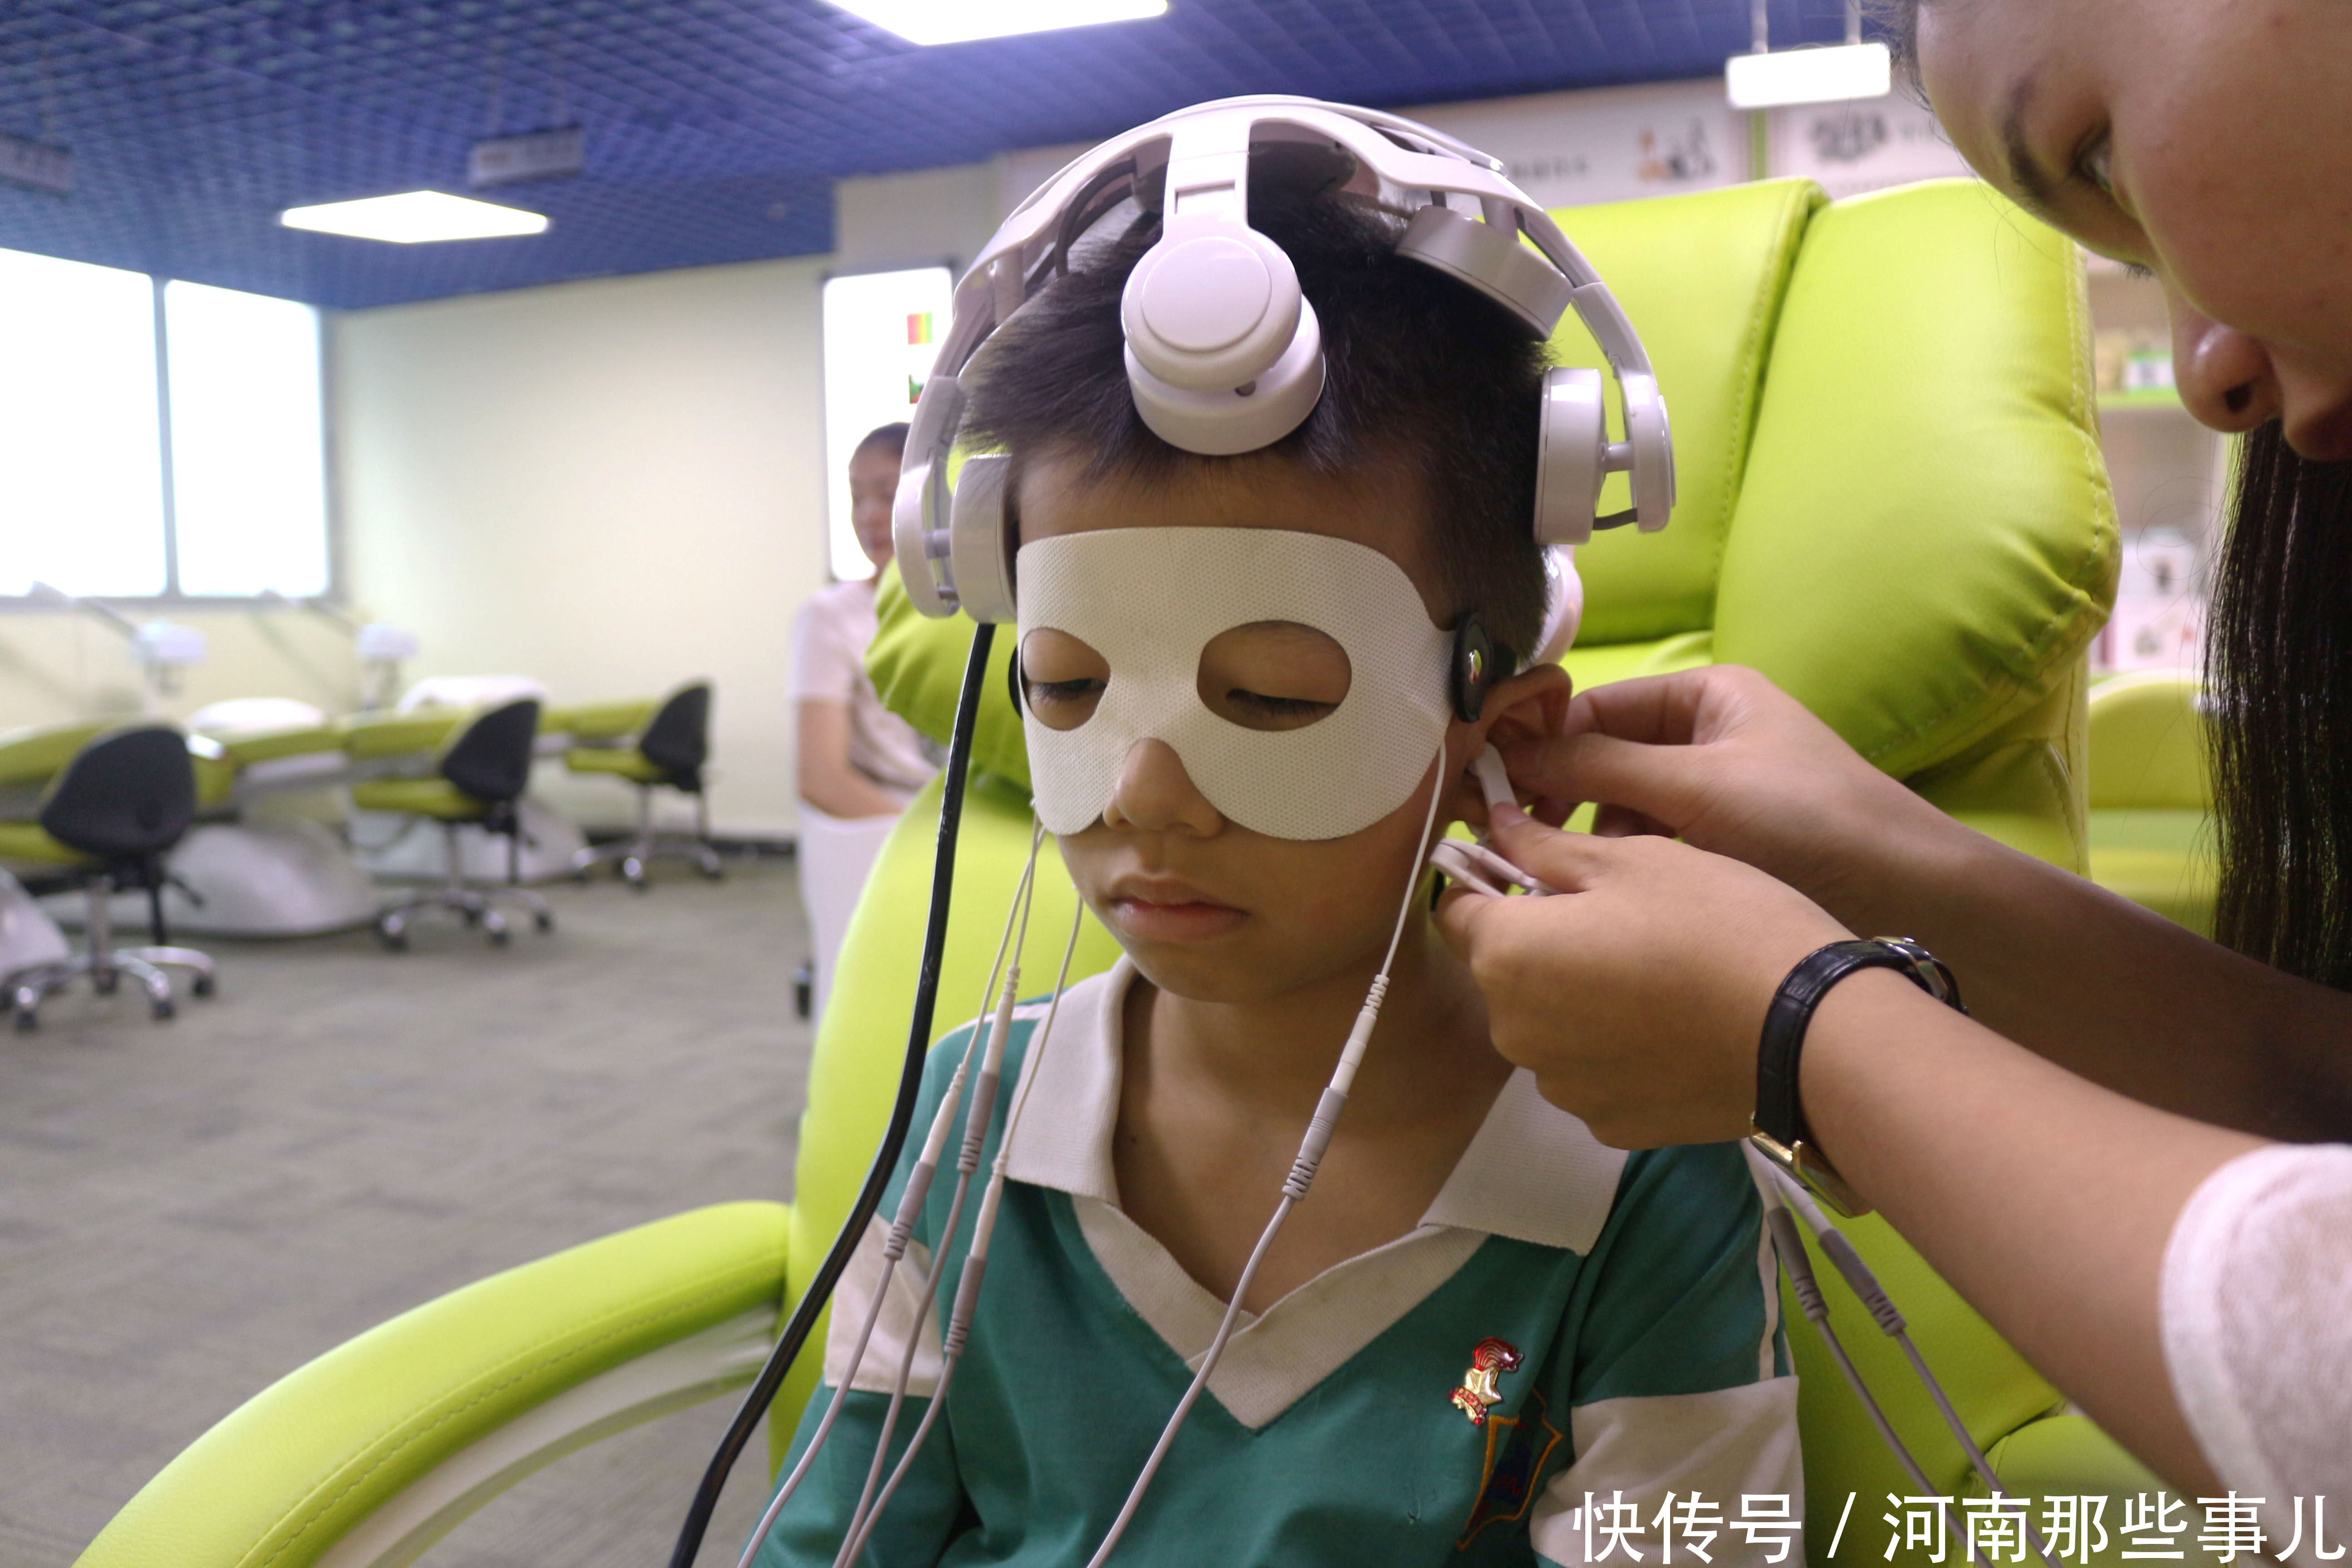 广州天河区一9岁男孩近视400度 妈妈:经常看电